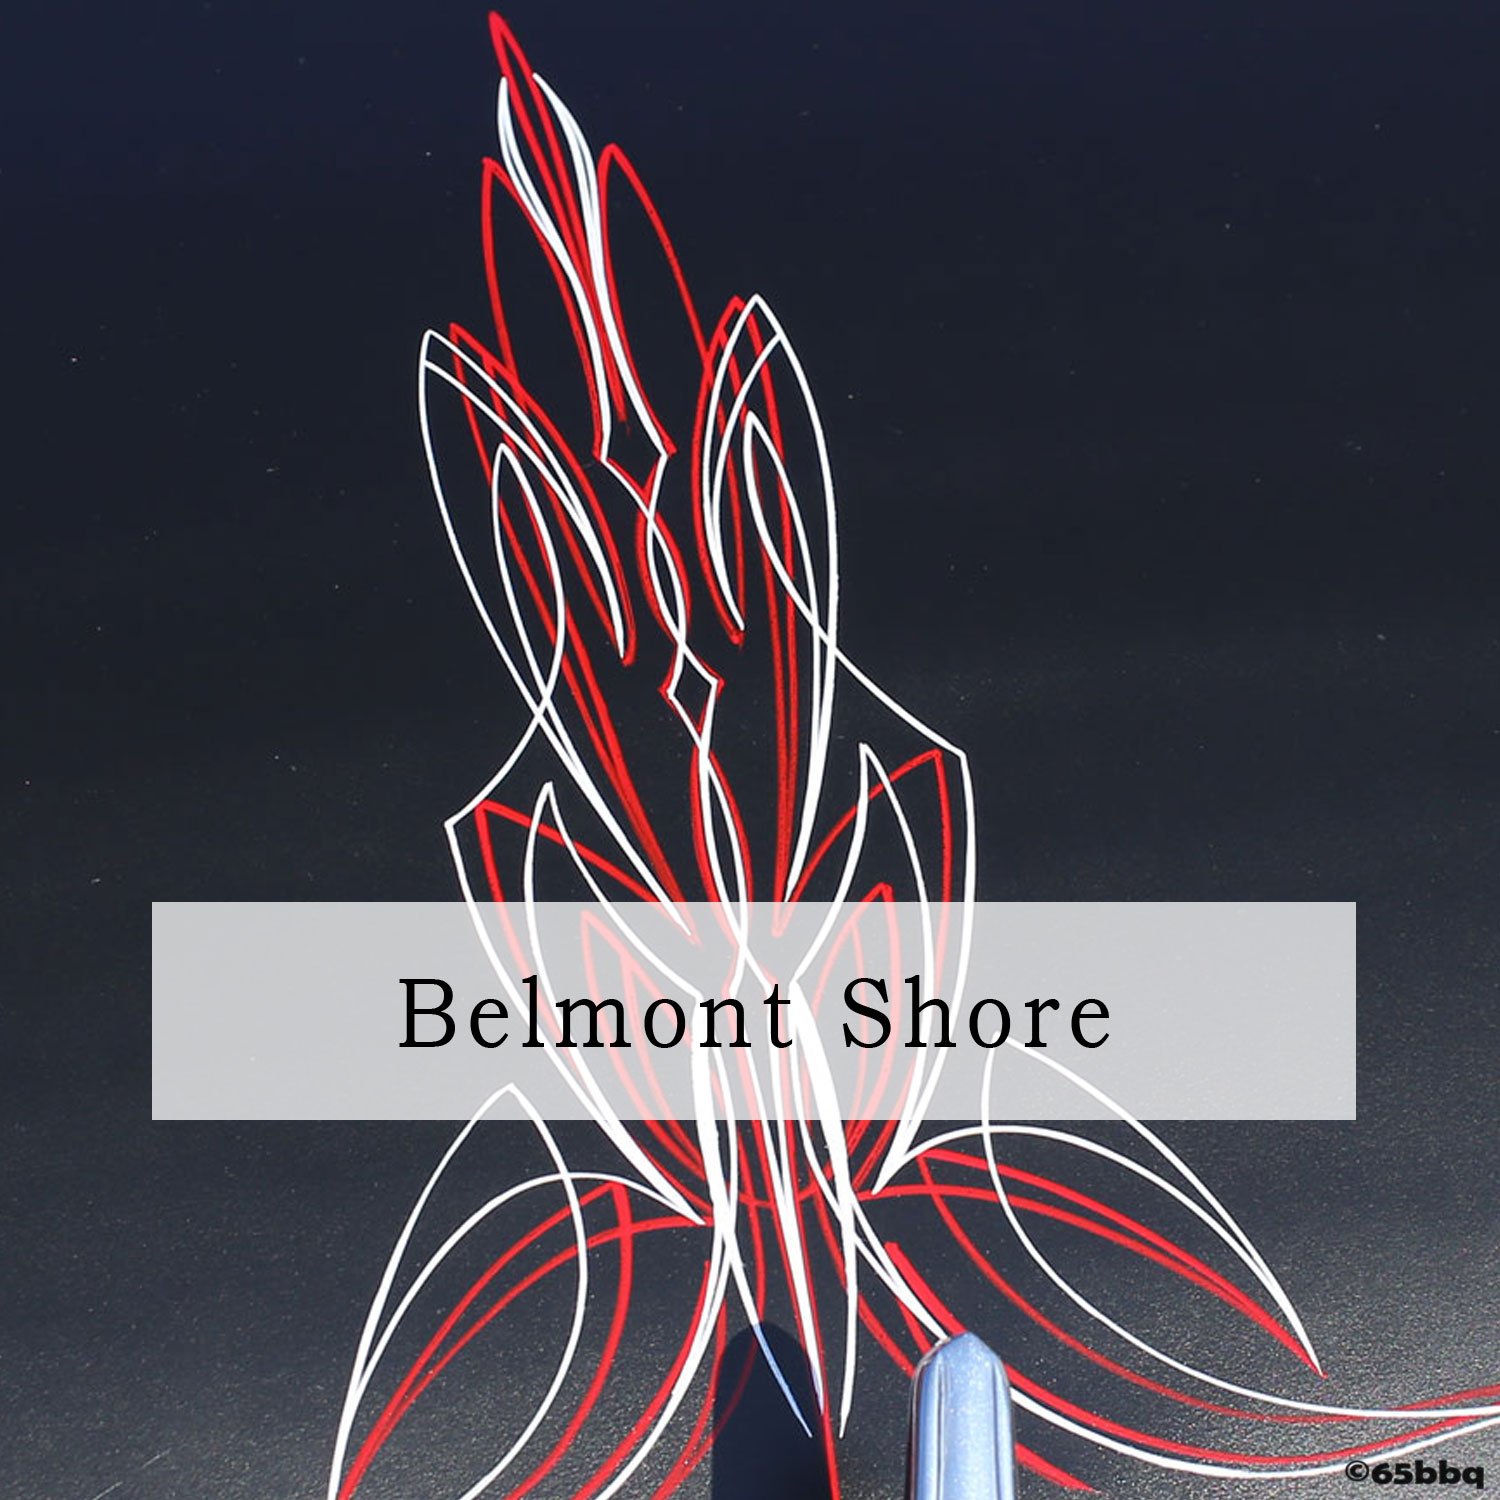 Belmonyt Shore Car Shows